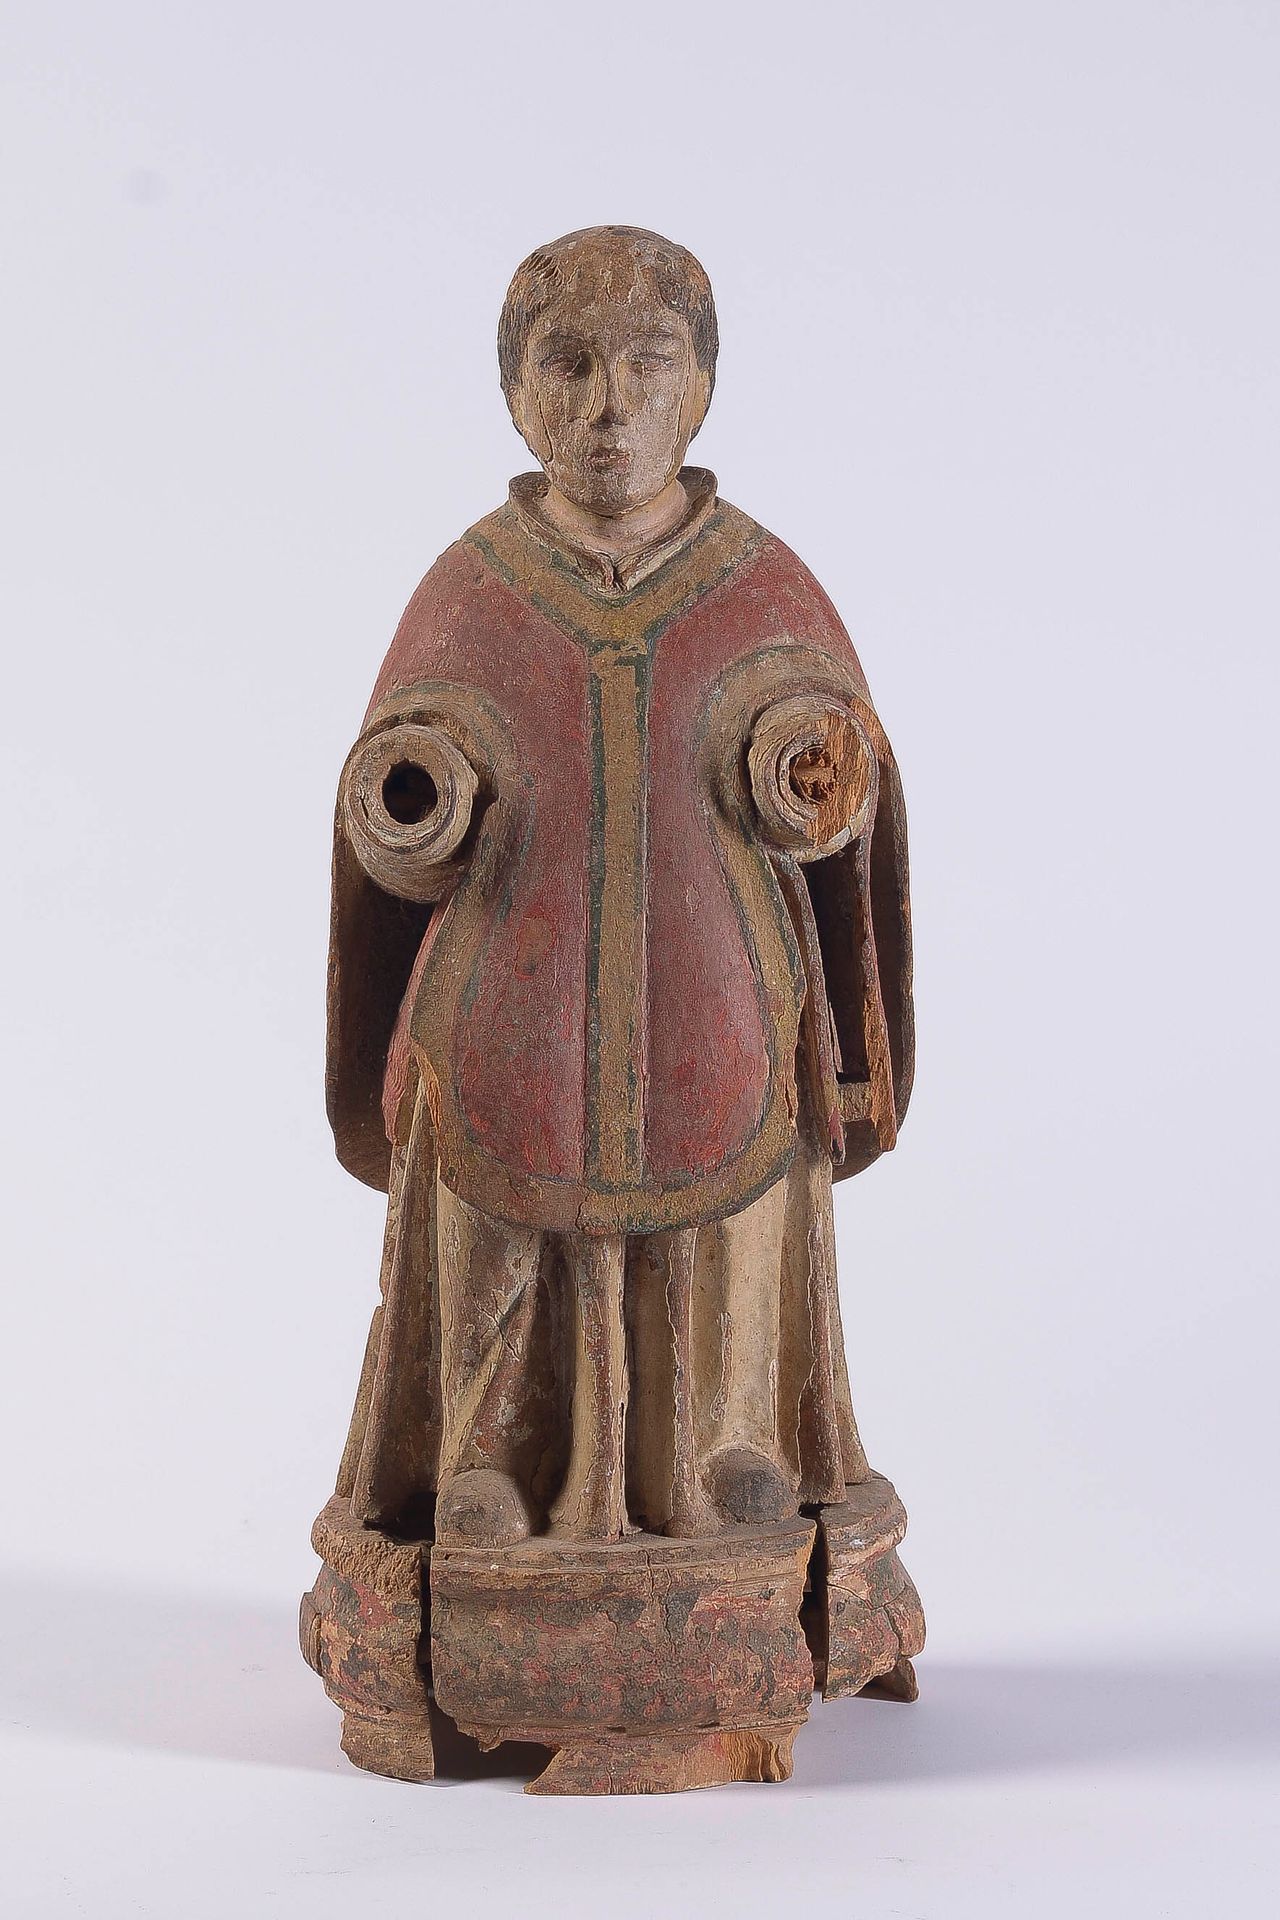 Null Heilige Figur aus polychrom geschnitztem Holz, bekleidet mit einer römische&hellip;